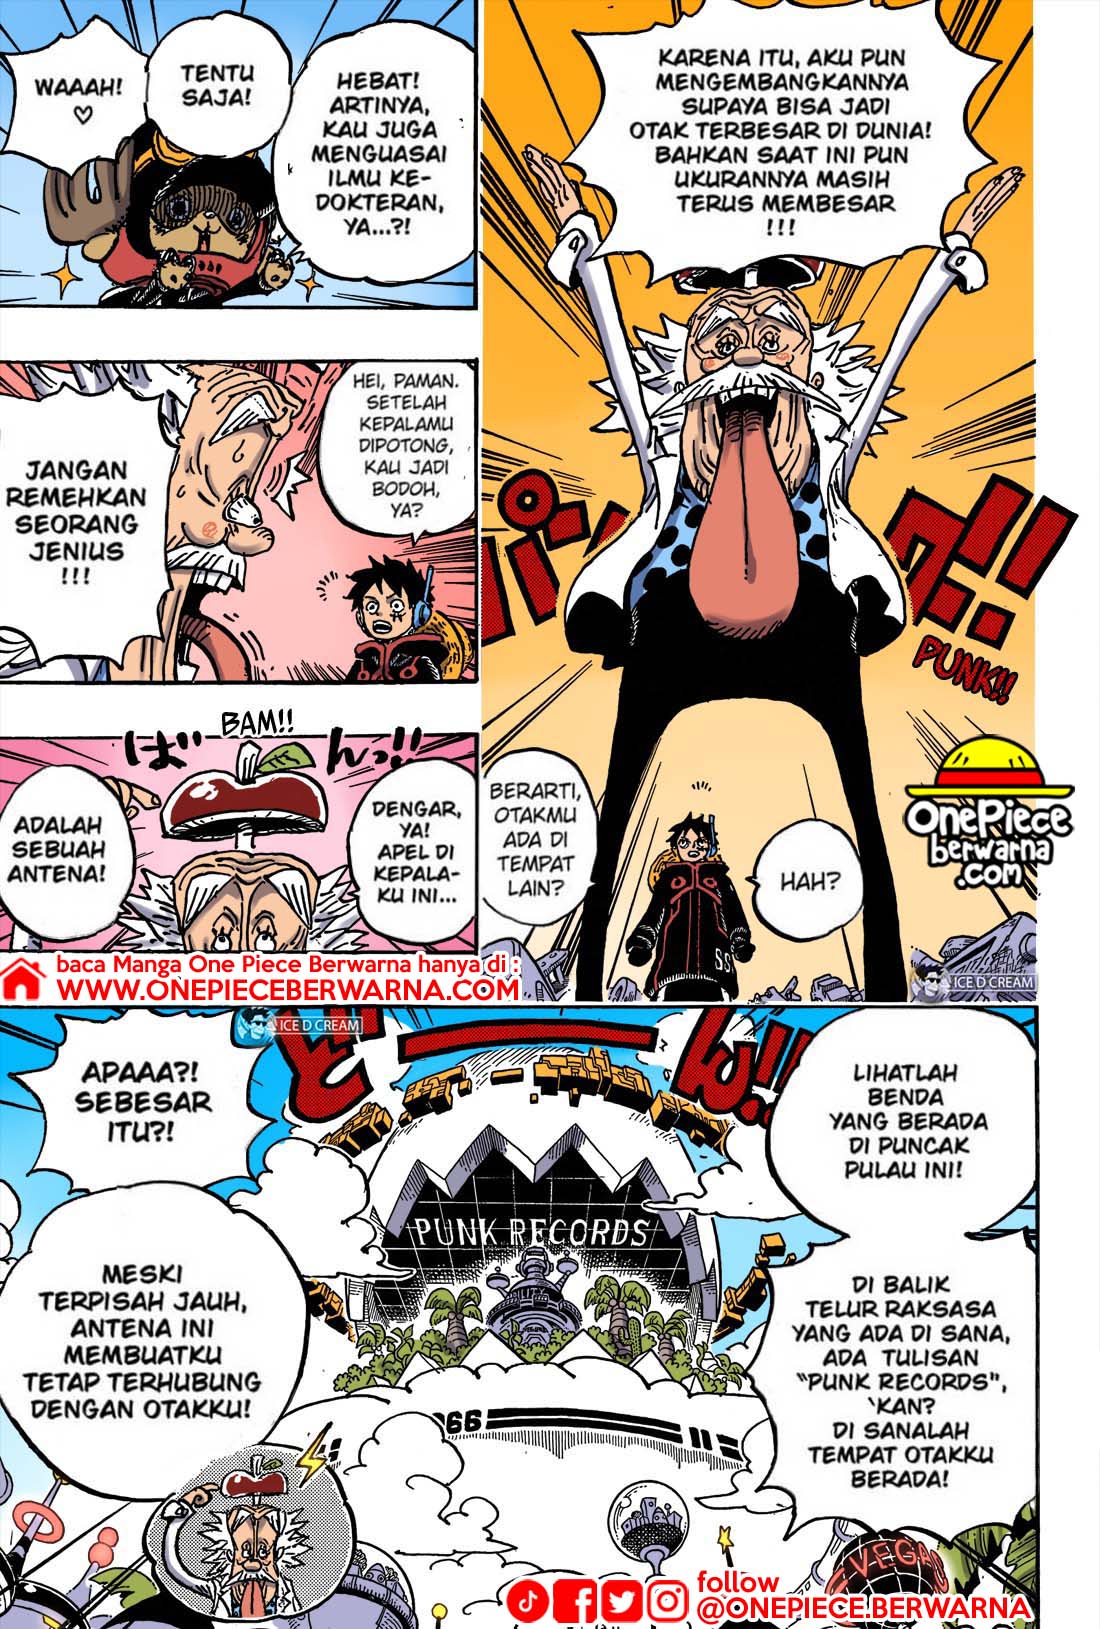 Baca manga komik One Piece Berwarna Bahasa Indonesia HD Chapter 1067